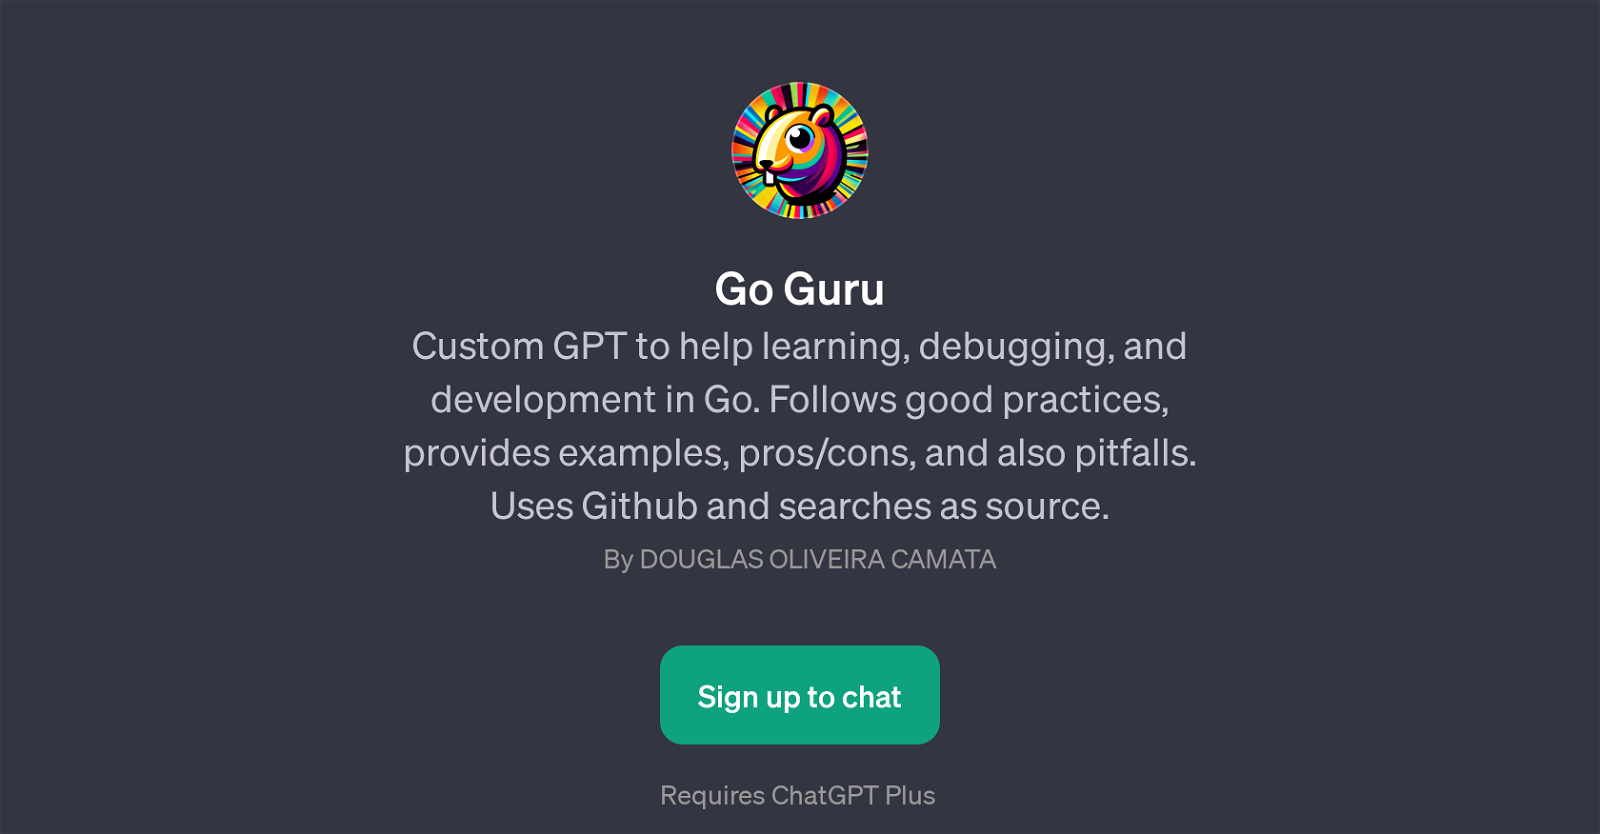 Go Guru website